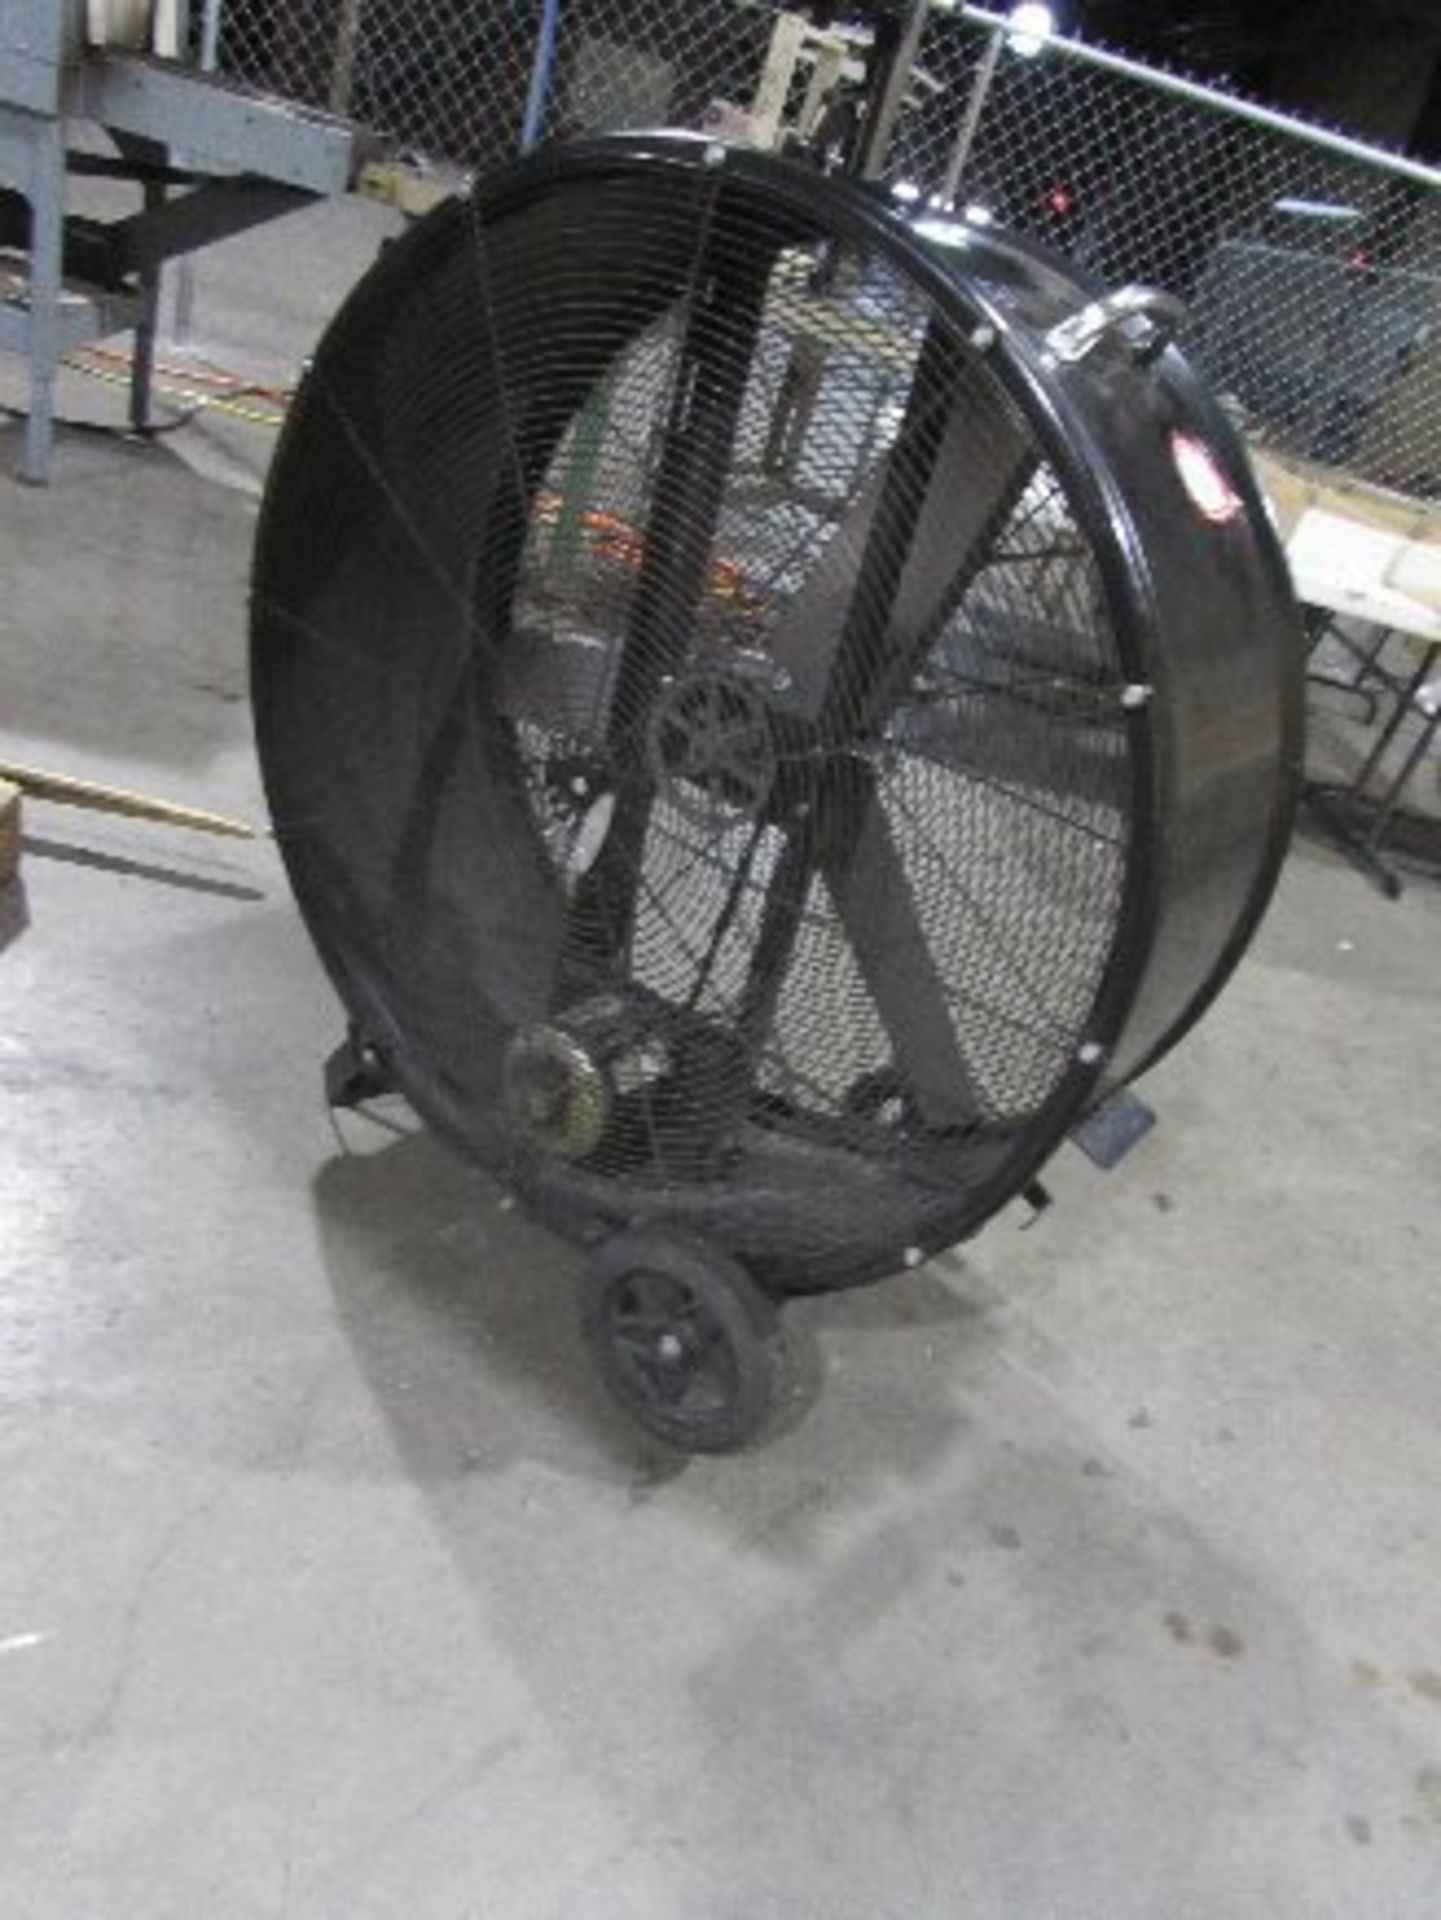 Lakewood 42" Barrel Fan